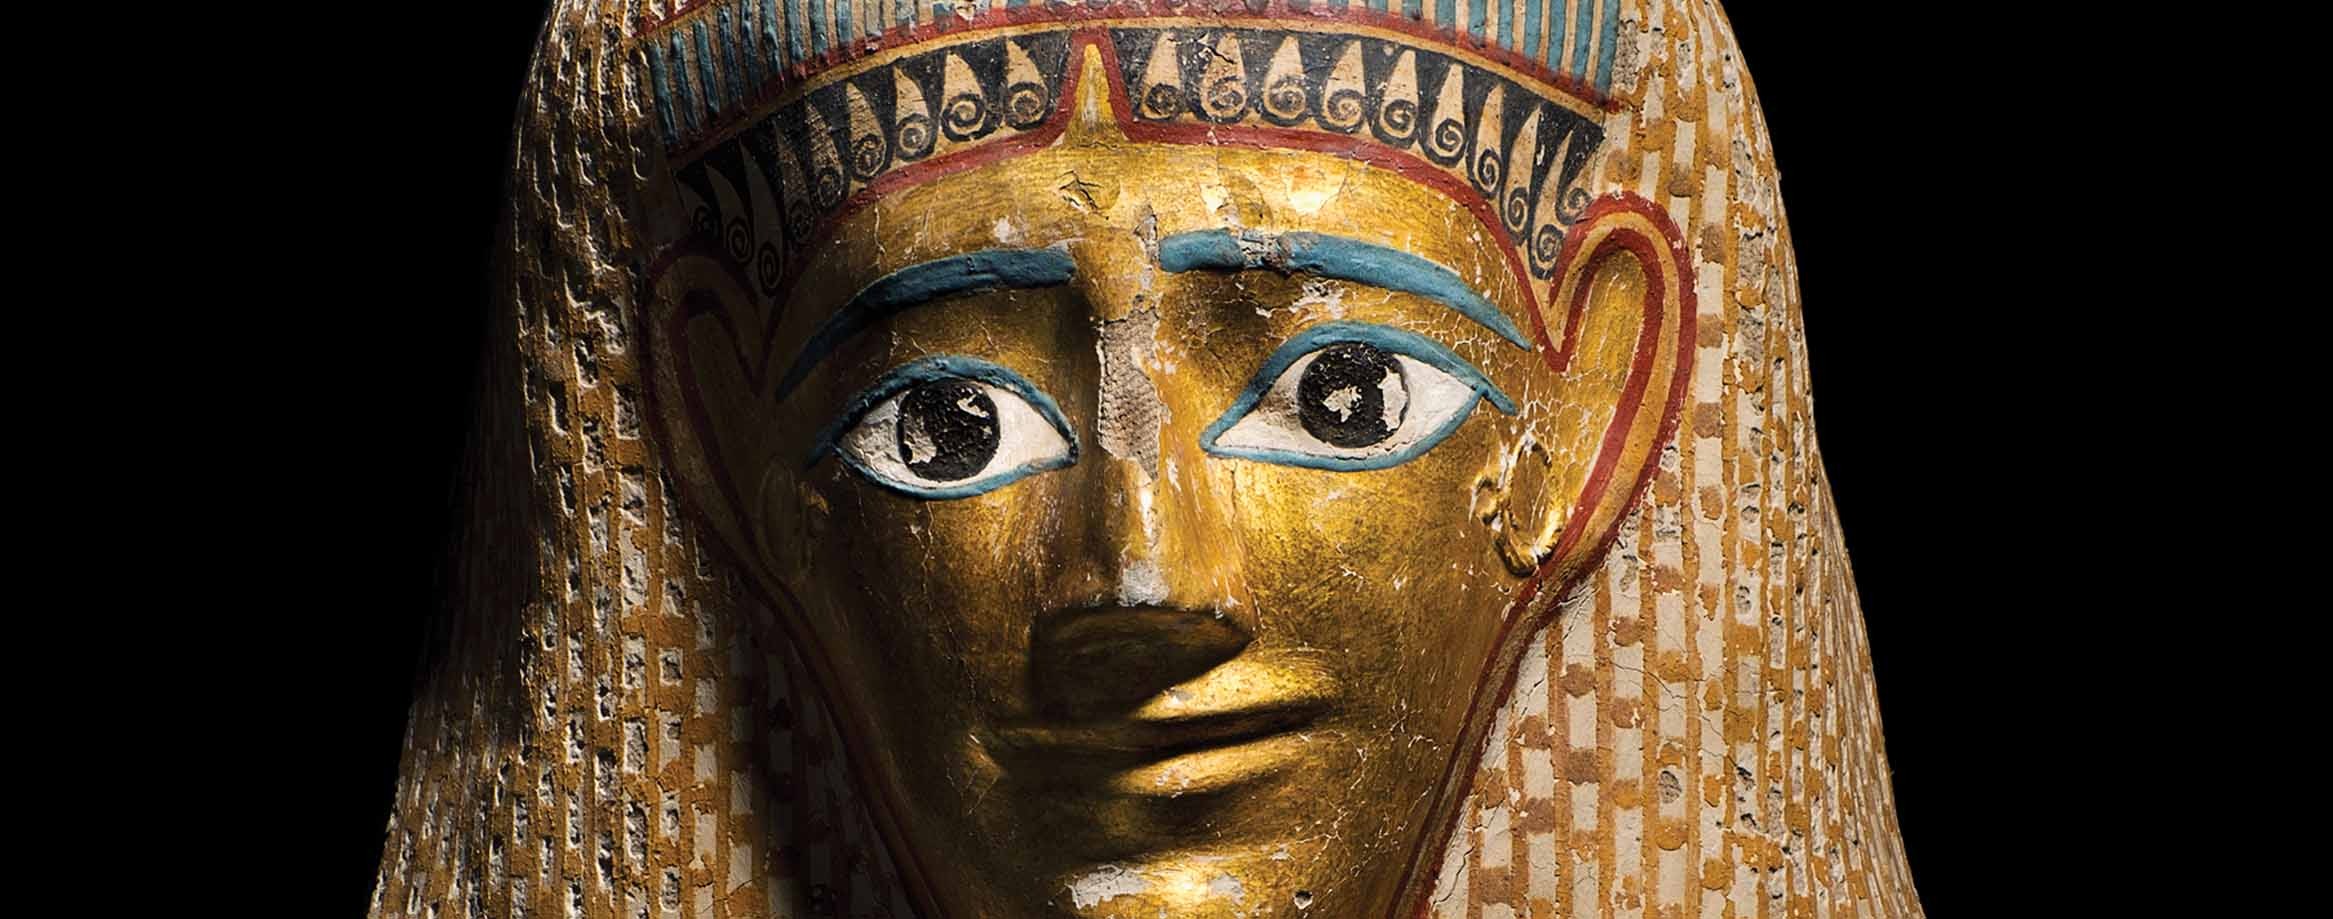 Mumifikacja w starożytnym Egipcie służyła czemuś innemu, niż myślimy